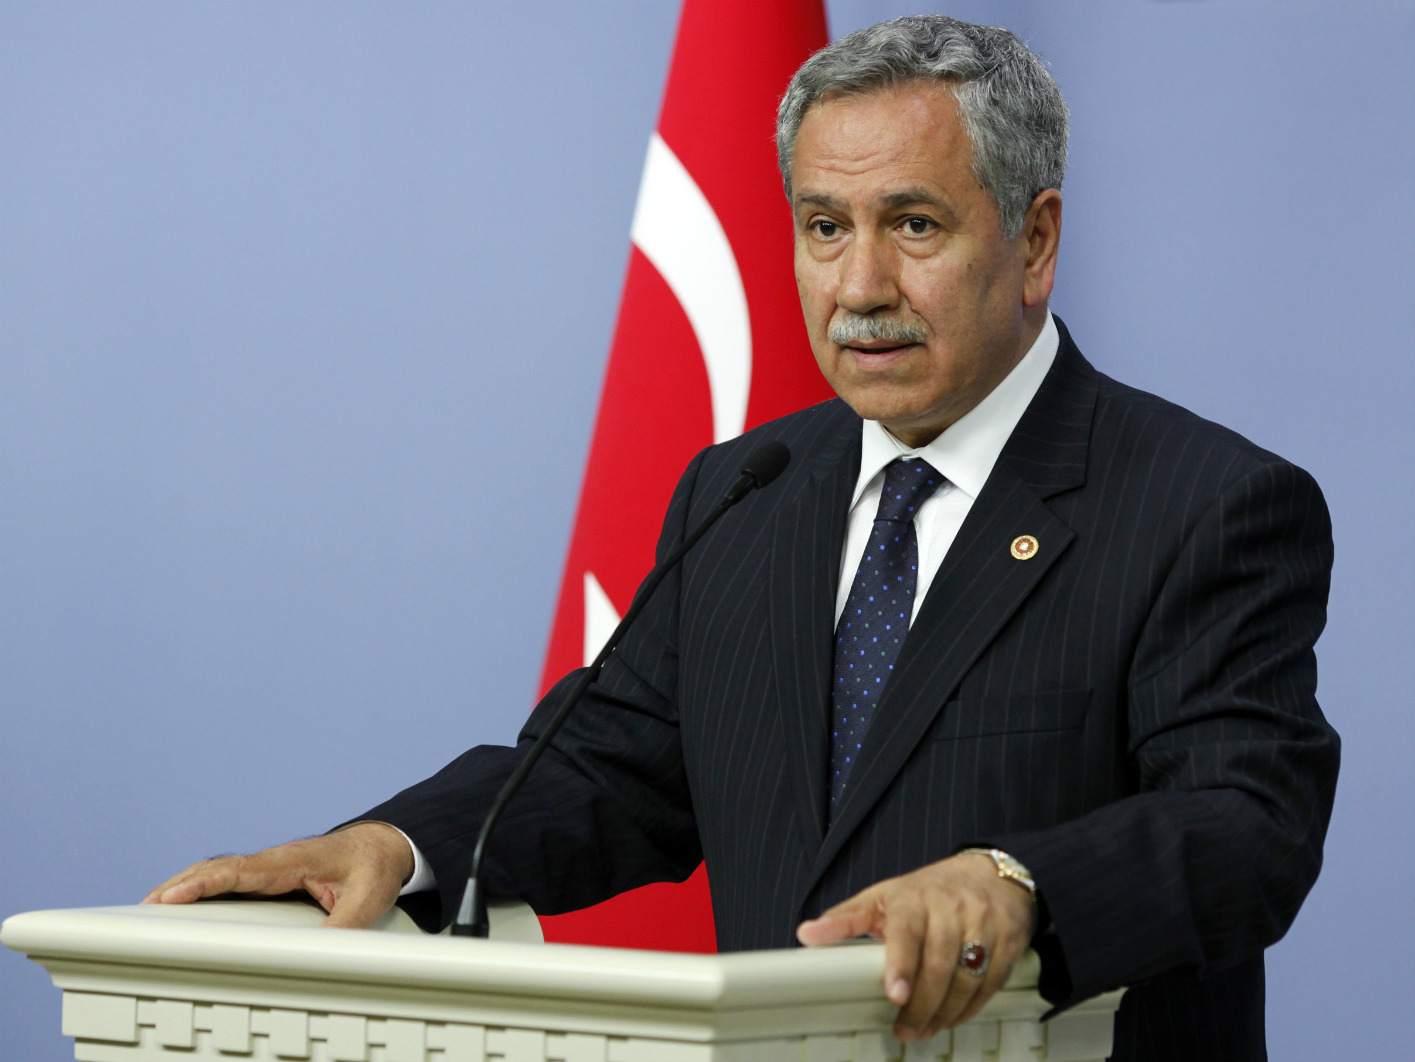 Σεξιστικές δηλώσεις του αντιπροέδρου της τουρκικής κυβέρνησης: ” Να σιωπήσεις, όπως πρέπει σε μια γυναίκα”